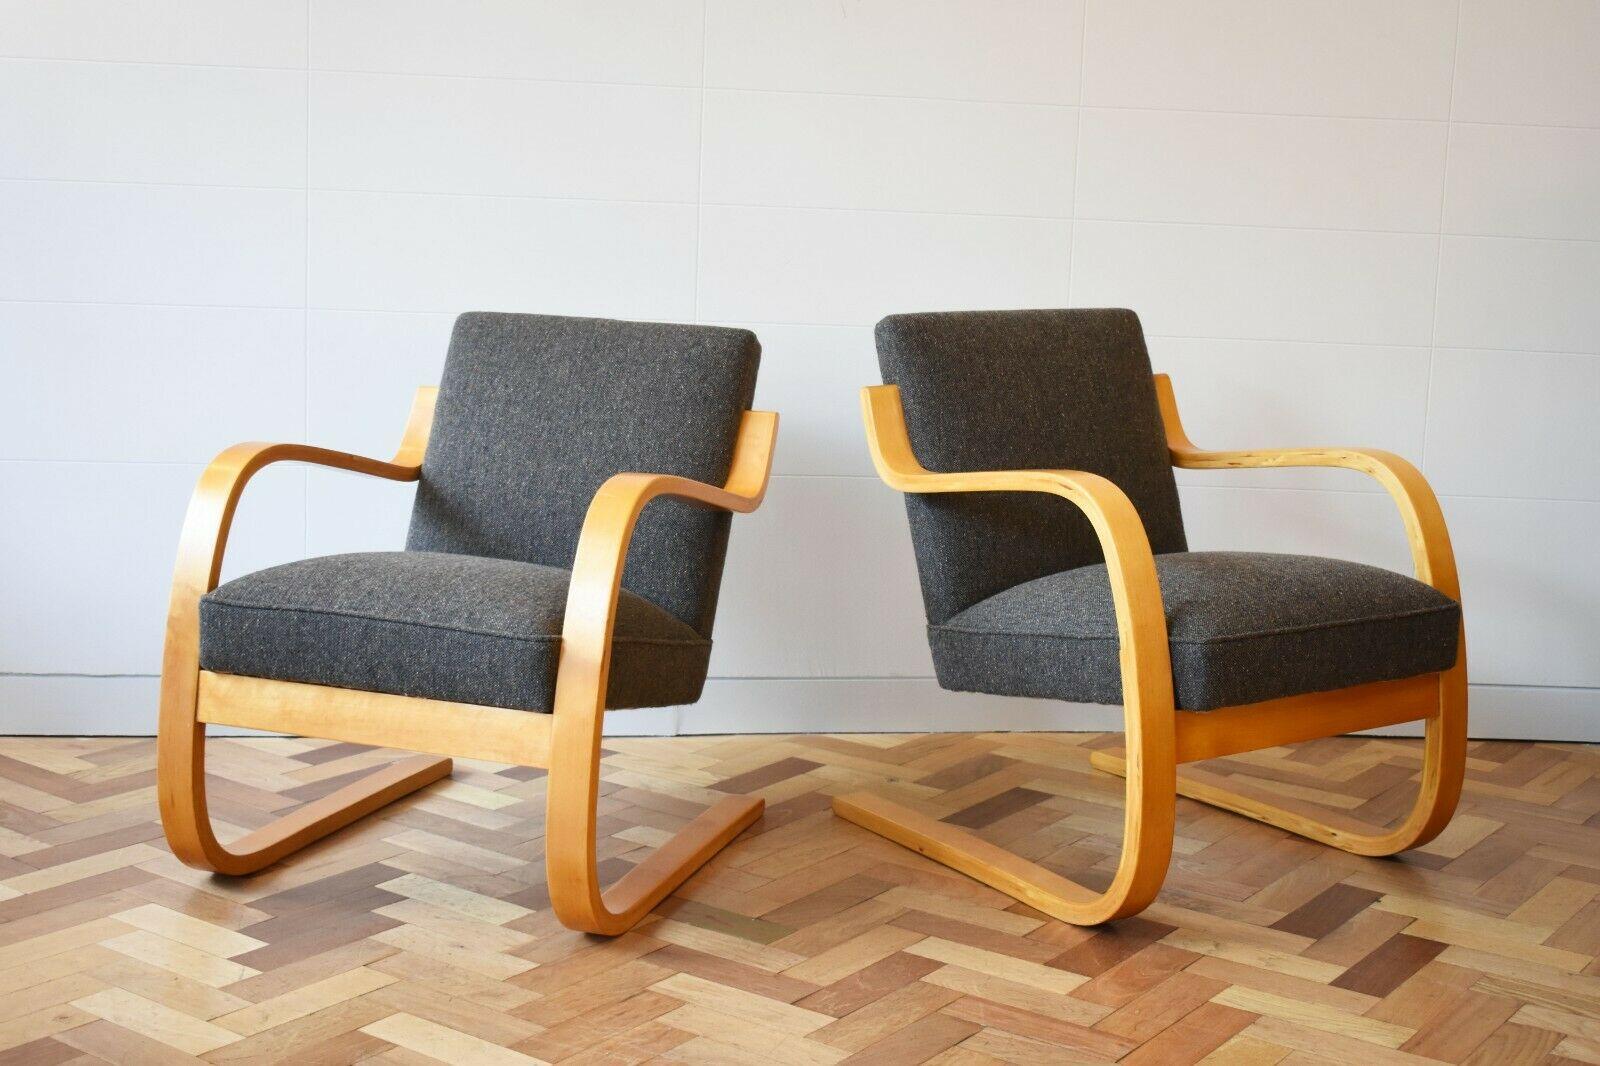 Mit ihrem skulpturalen Gestell aus gebogenem Buchenholz und der freitragenden Holzkonstruktion sind diese Stühle ein Aalto-Klassiker, der die Schönheit des Modernismus der Jahrhundertmitte verkörpert. 

Die Sessel sind mit dem grauen Stoff Mourne